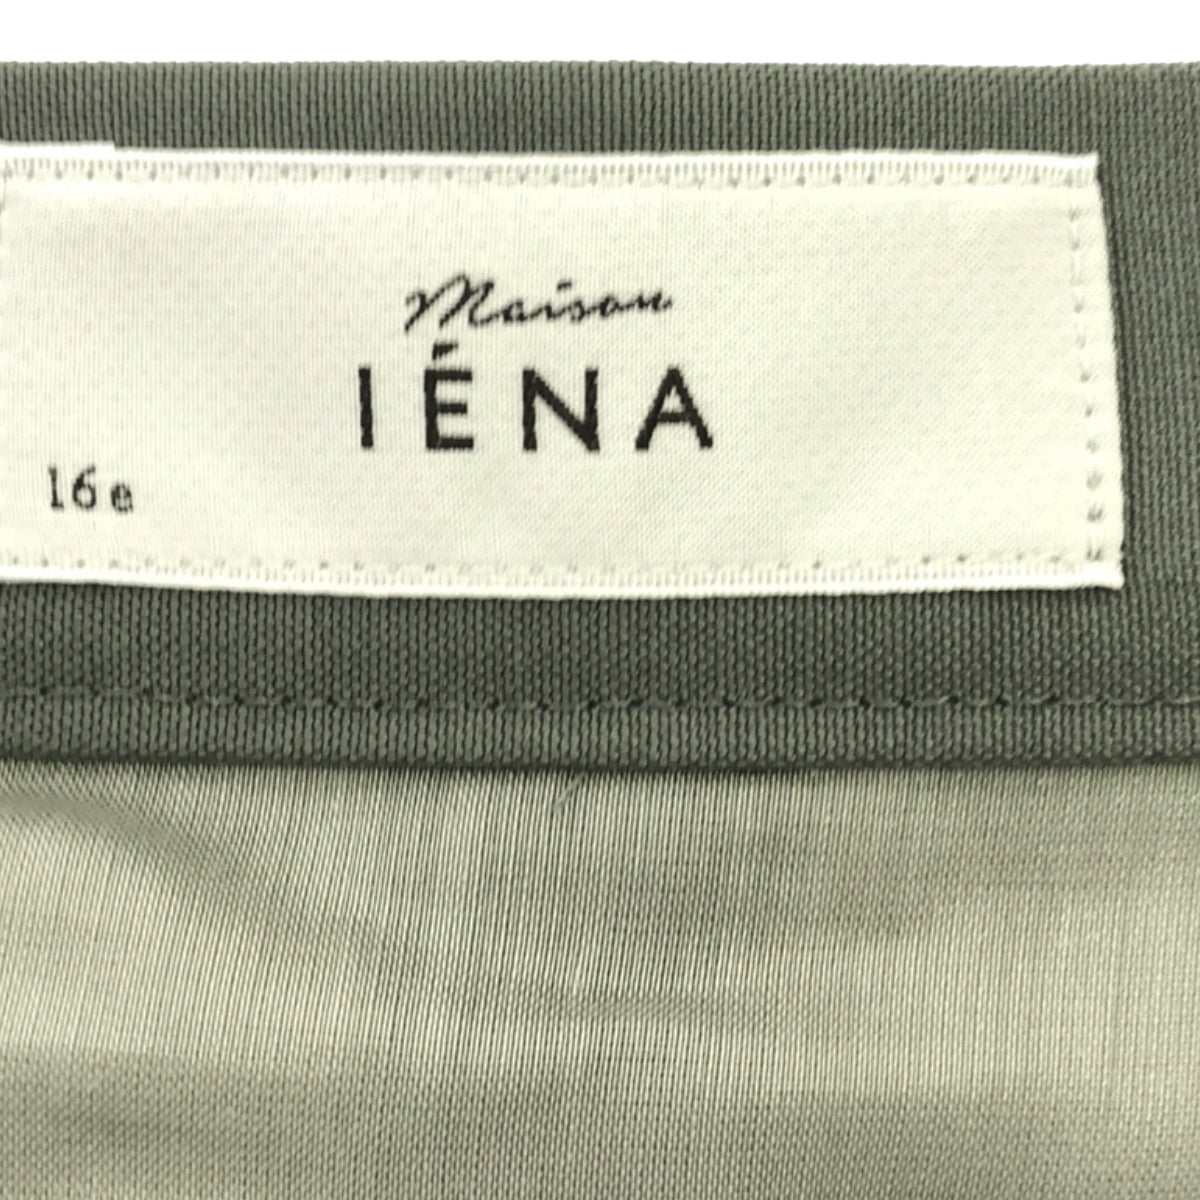 IENA / イエナ | 2020AW | MAISON IENA ウールコクーンフレアスカート | 36 | レディース